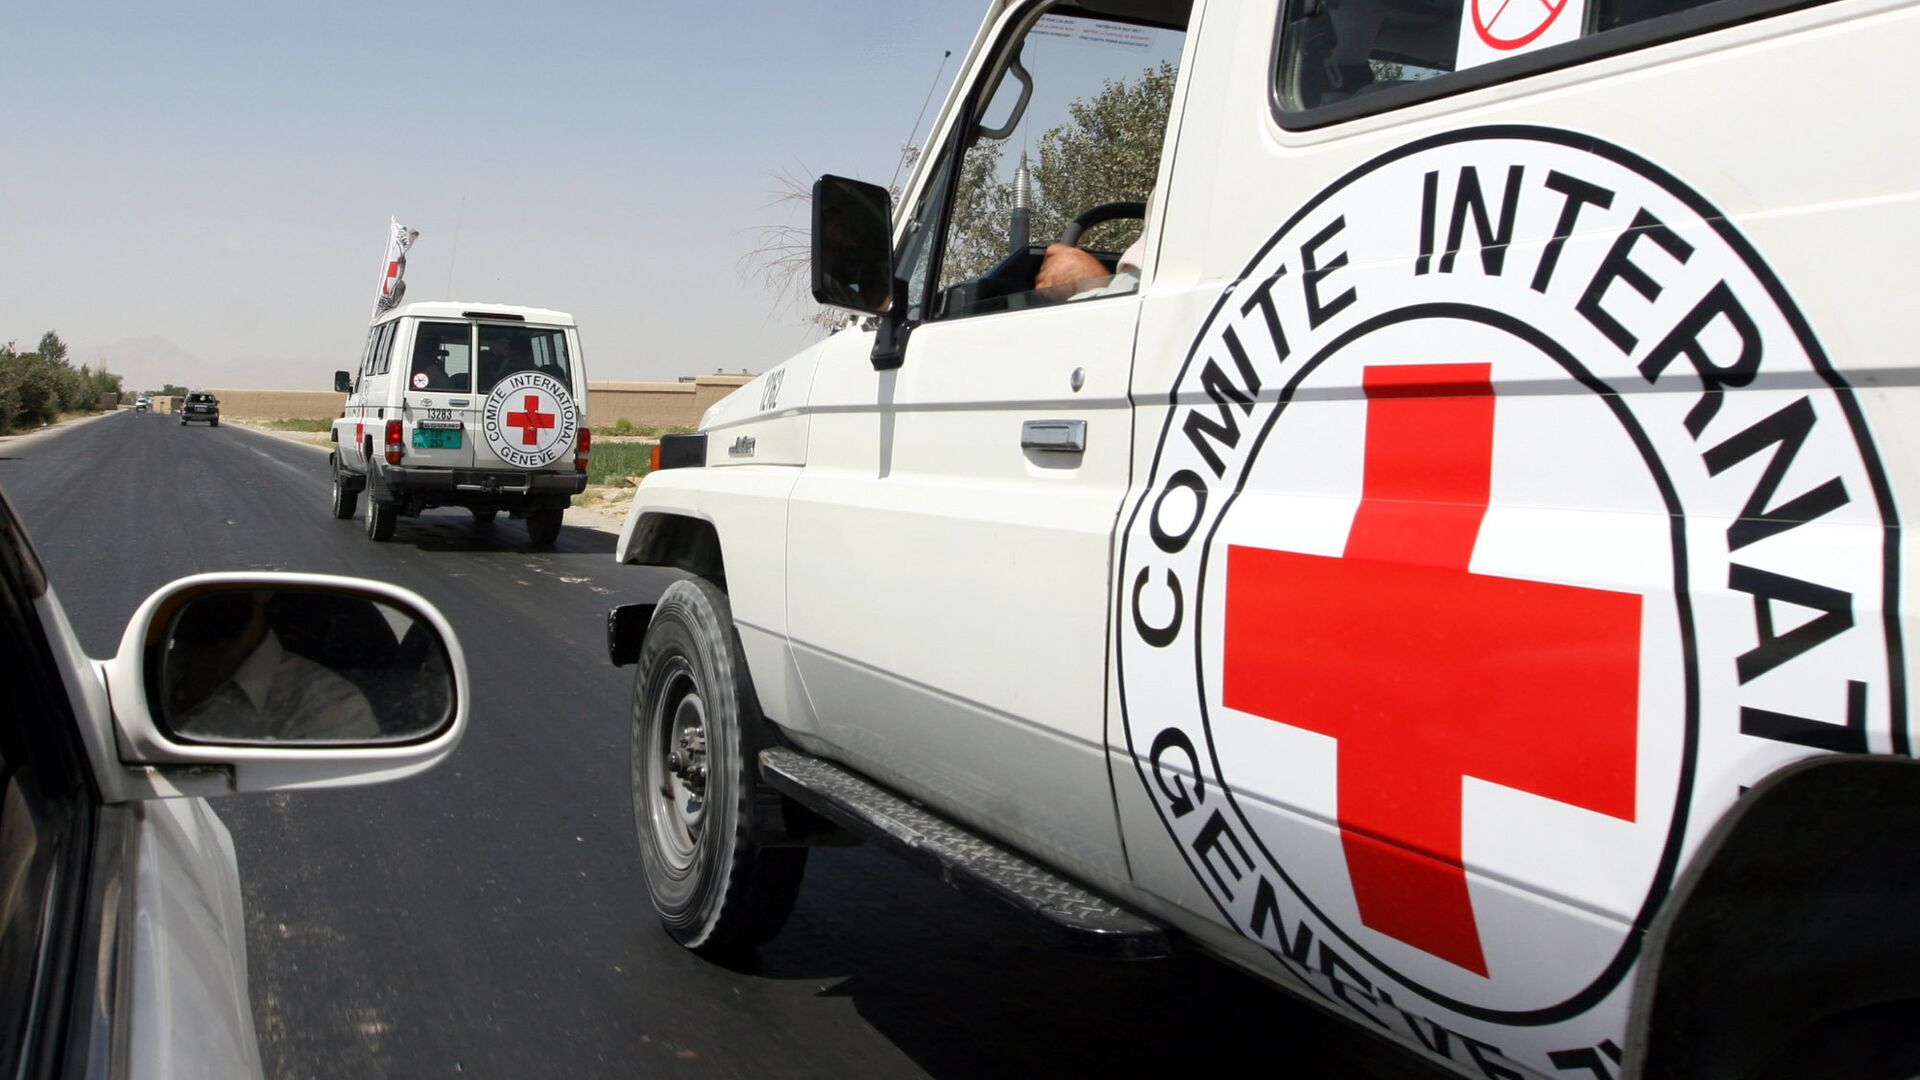  درخواست 33 میلیون دالر توسط صلیب سرخ برای افغانستان   - اسپوتنیک افغانستان  , 1920, 17.08.2021